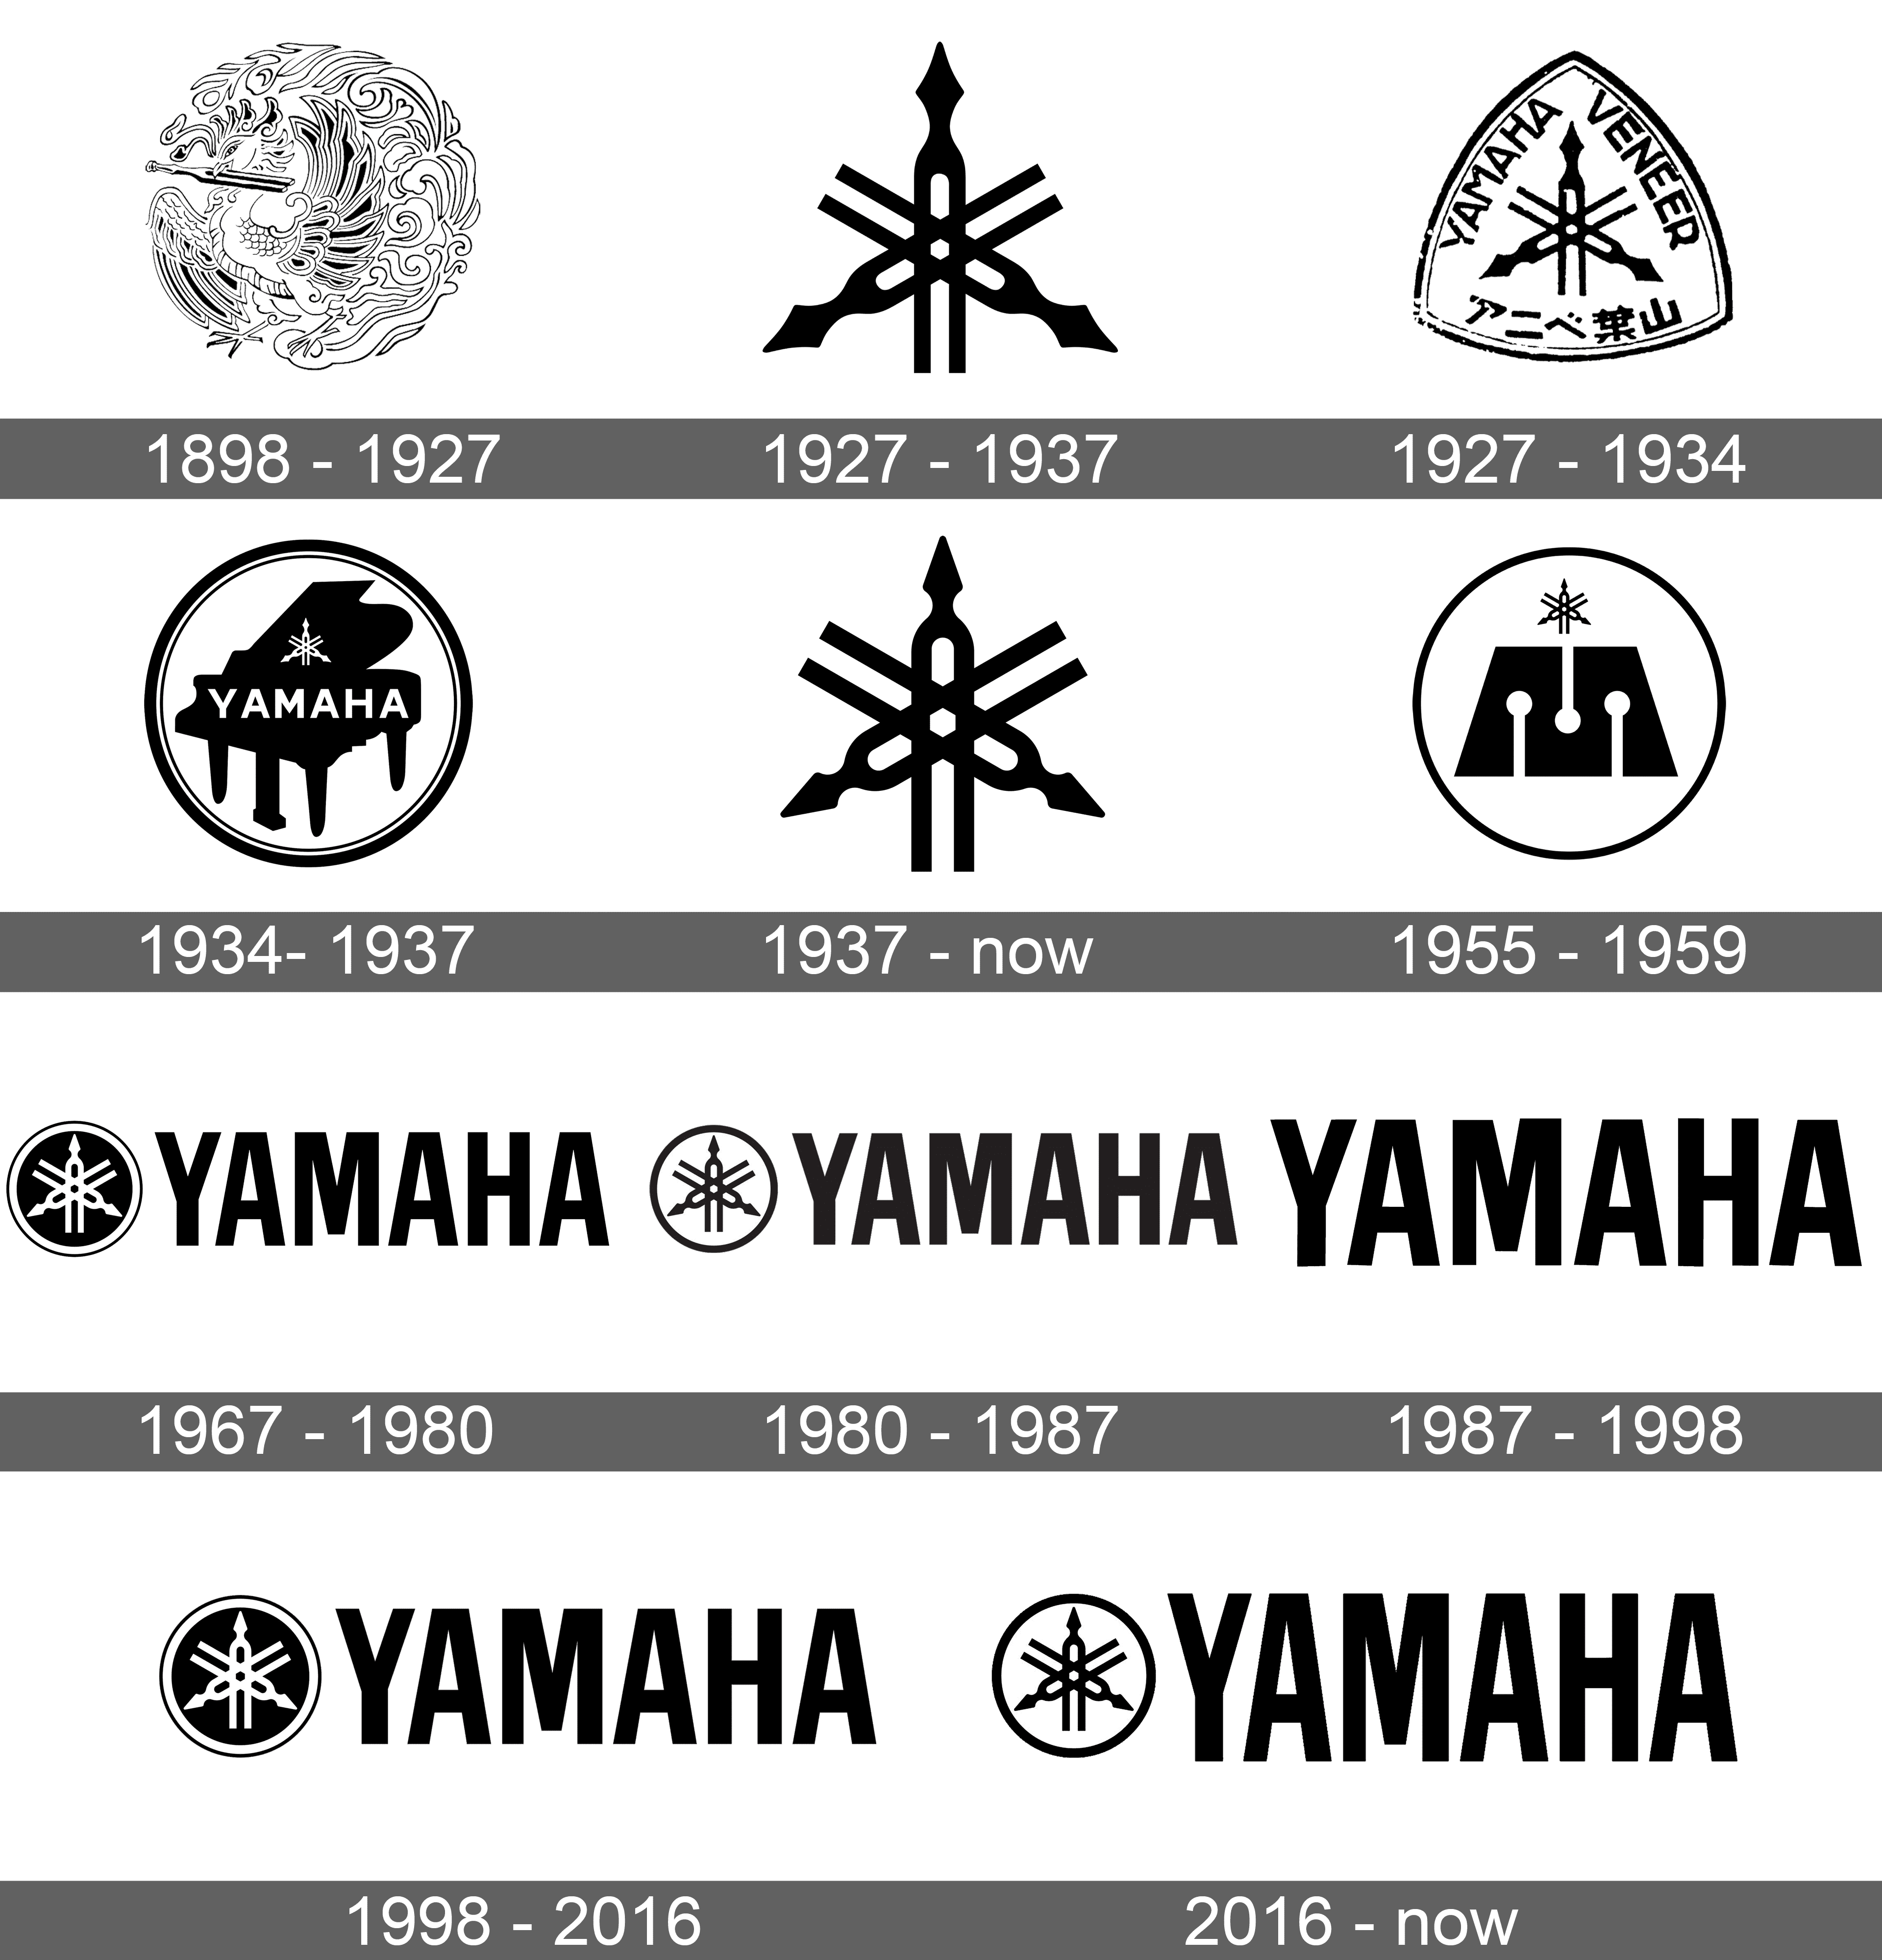 Lịch sử, ý nghĩa và biểu tượng Yamaha: Thương hiệu Yamaha không chỉ là một thương hiệu nổi tiếng trên toàn thế giới mà còn mang theo một lịch sử và ý nghĩa đặc biệt. Với biểu tượng \